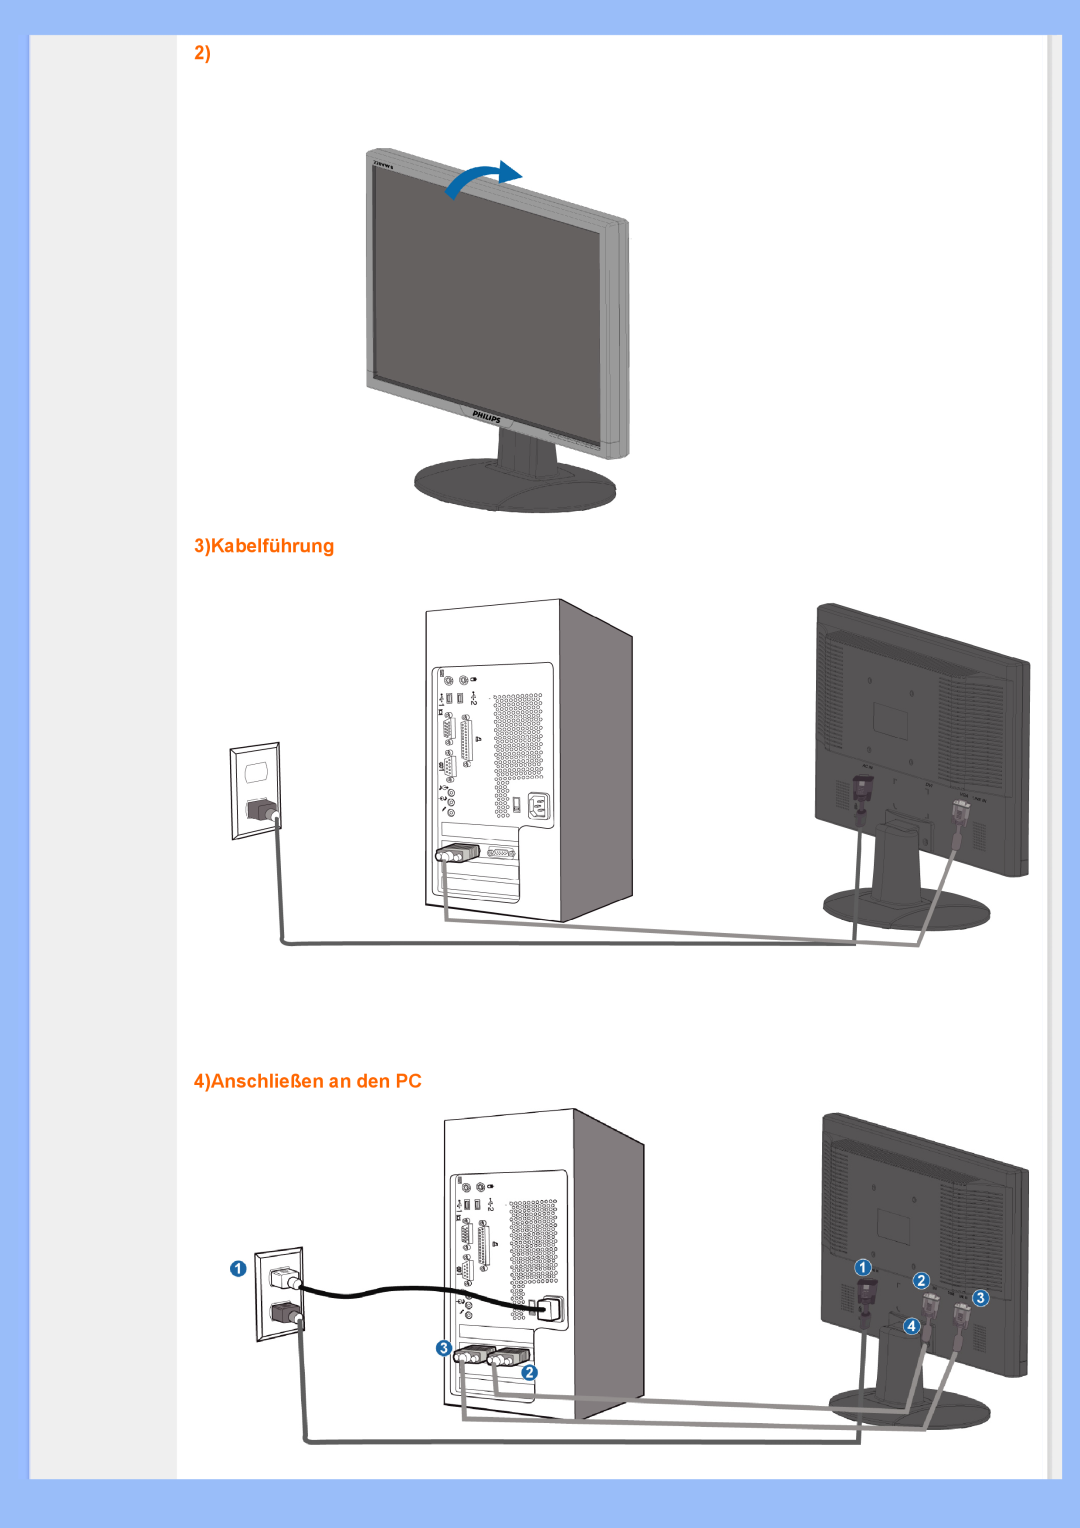 Philips 220VW8 user manual 2 3Kabelführung 4Anschließen an den PC 